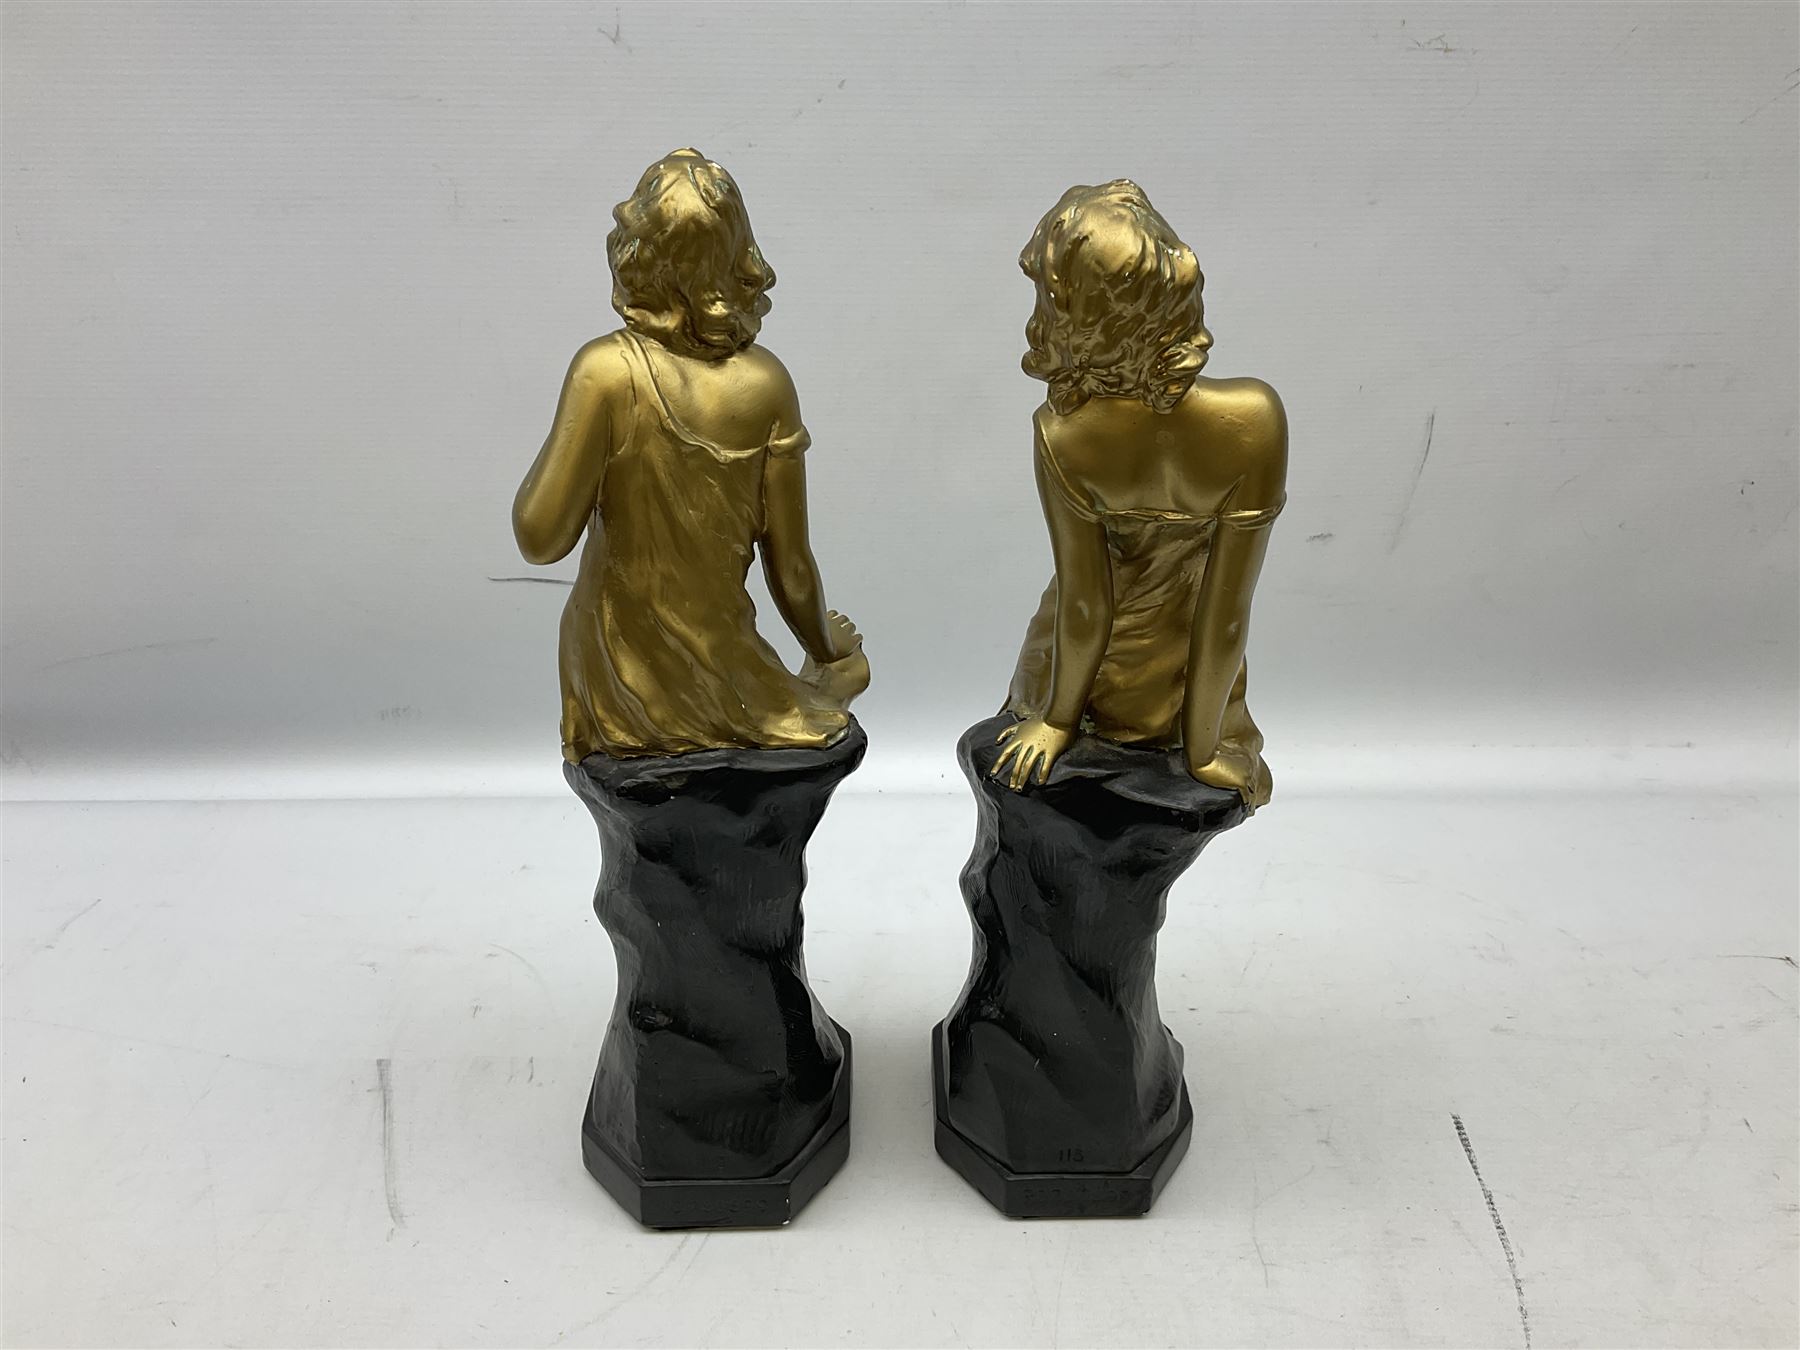 Pair of Art deco period plaster figures - Image 5 of 7